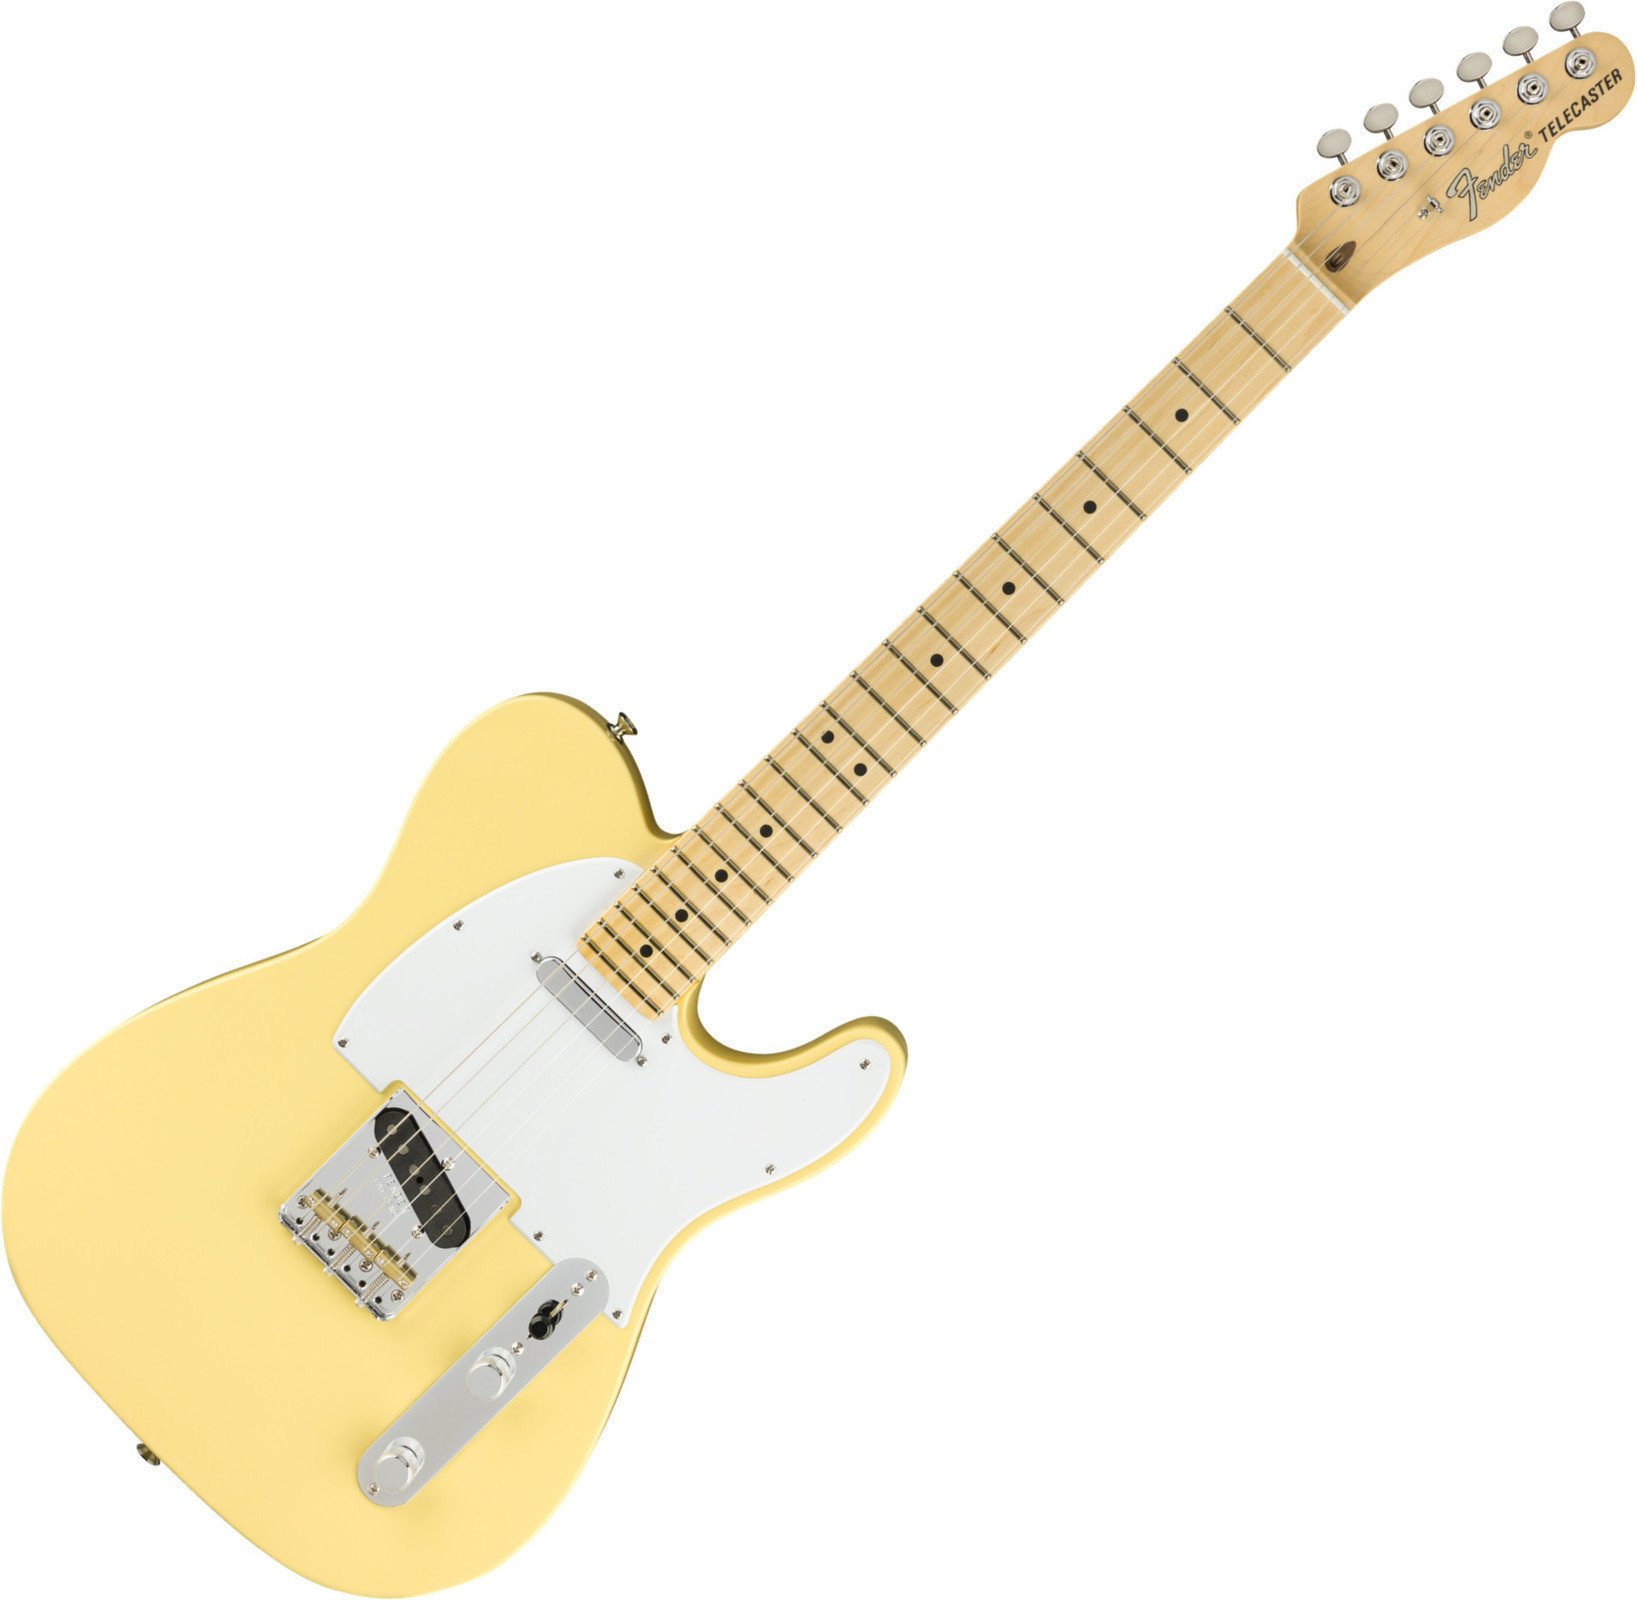 Fender American Performer Telecaster MN Vintage White Fender